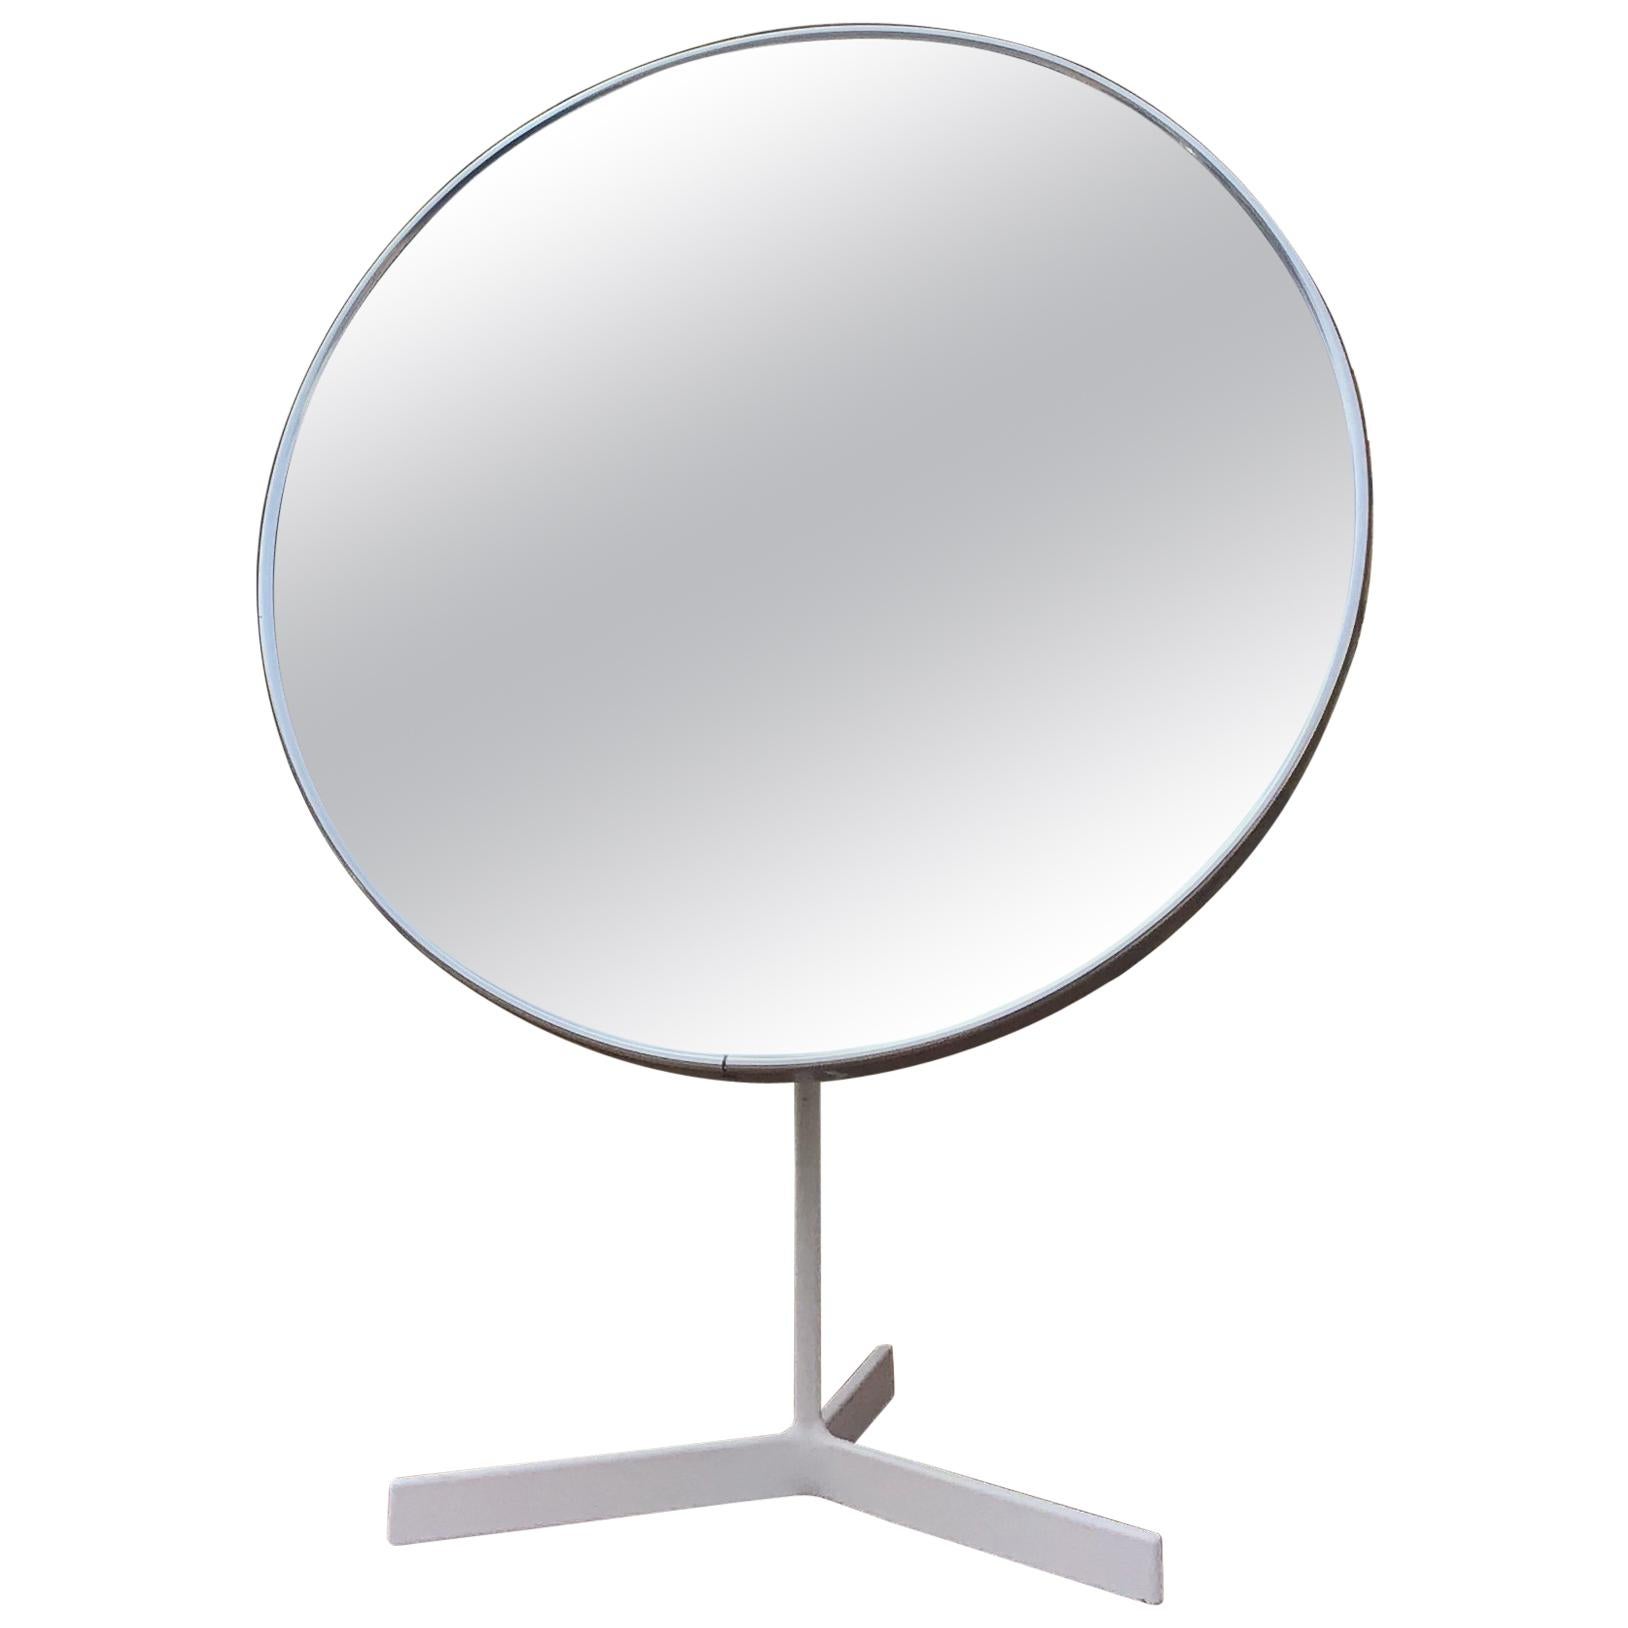 Durlston Designs Vanity Mirror Vintage Table Mirror